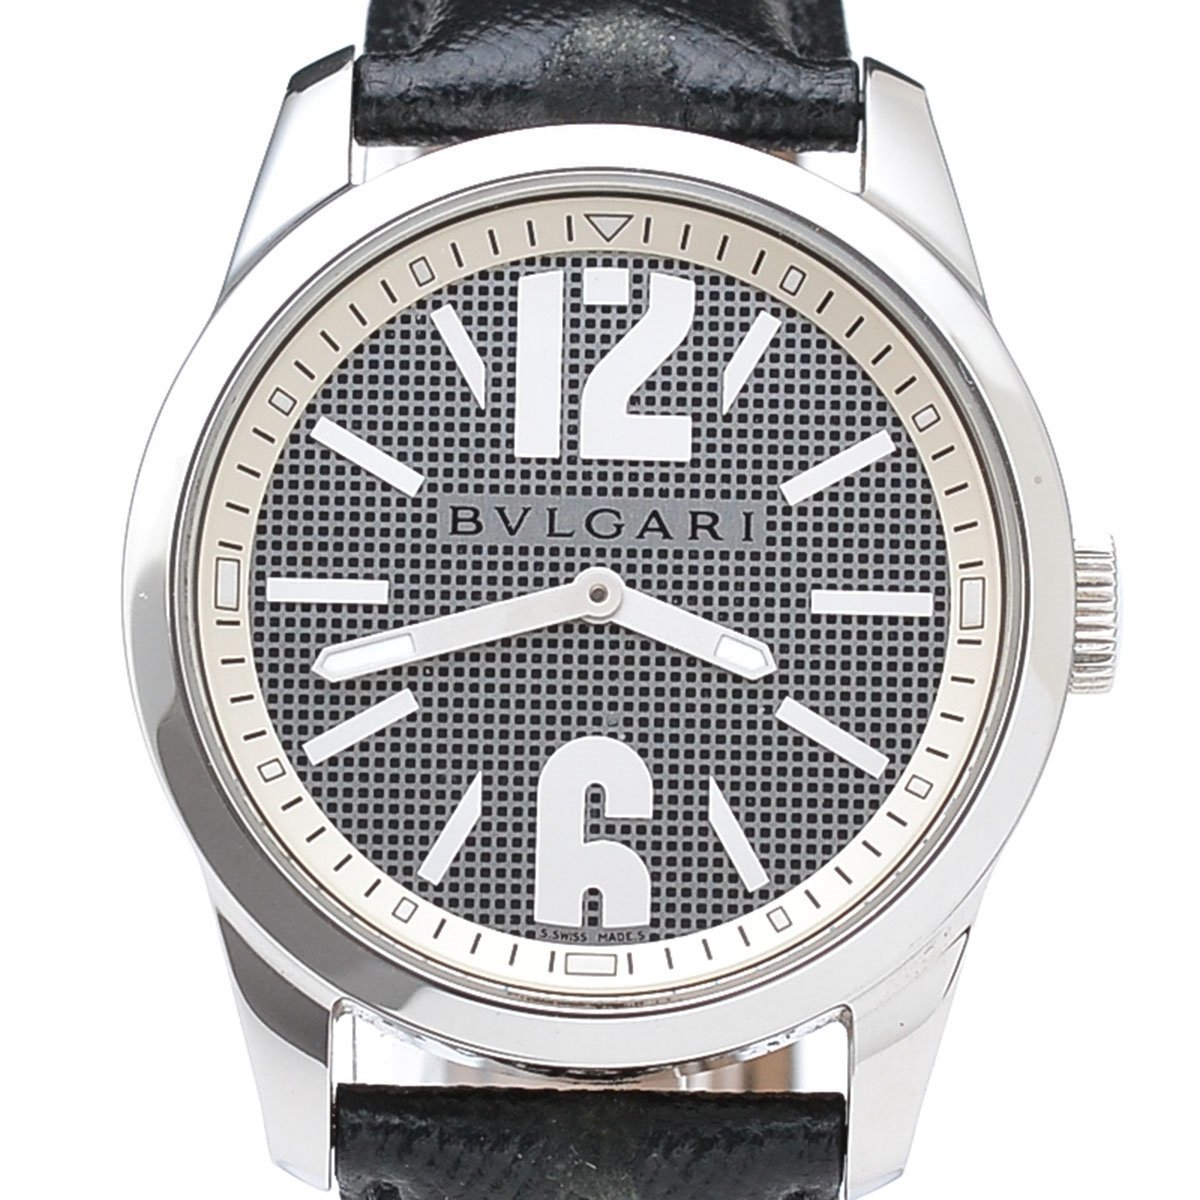 ◆417567 BVLGARI ブルガリ クォーツ式腕時計 ST37S サイズ37mm メンズ